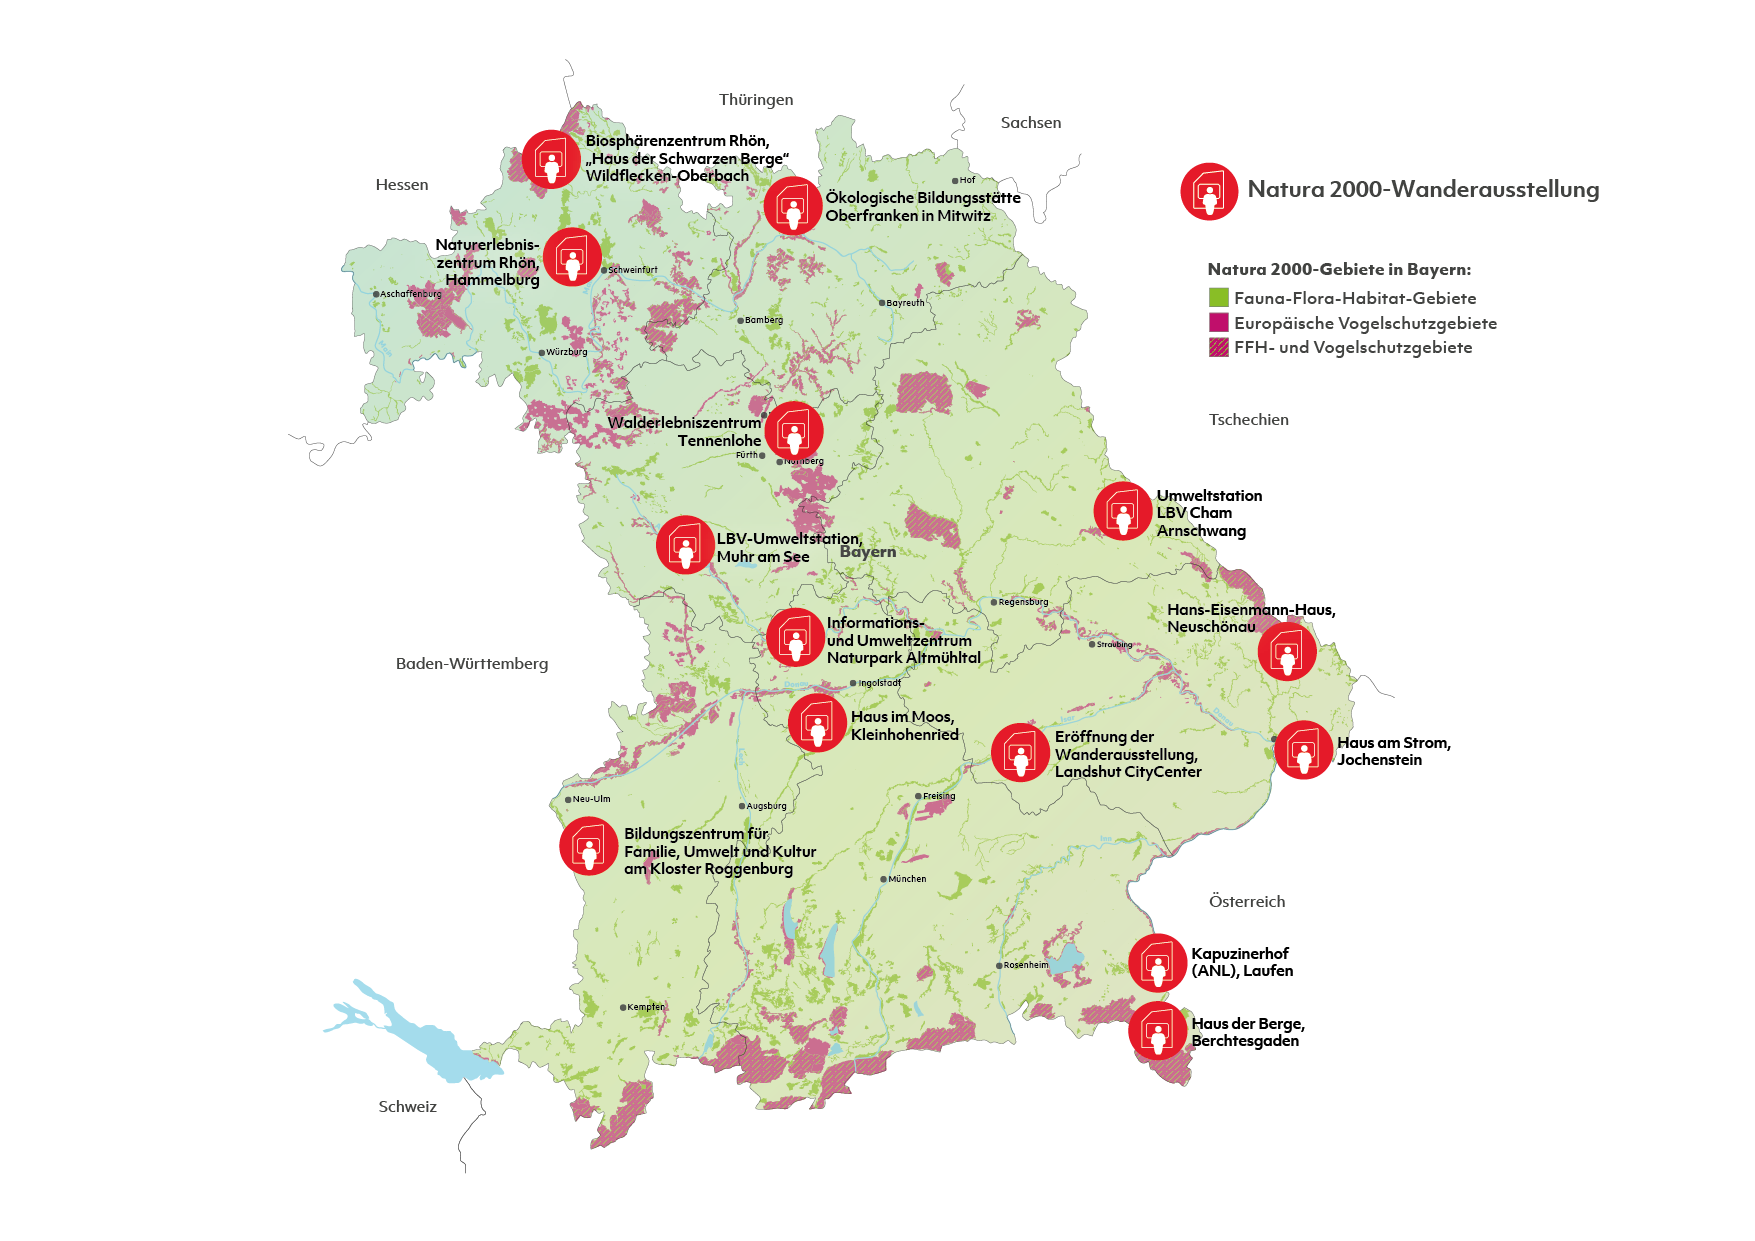 Bayernkarte mit allen Standorten der Wanderausstellung.